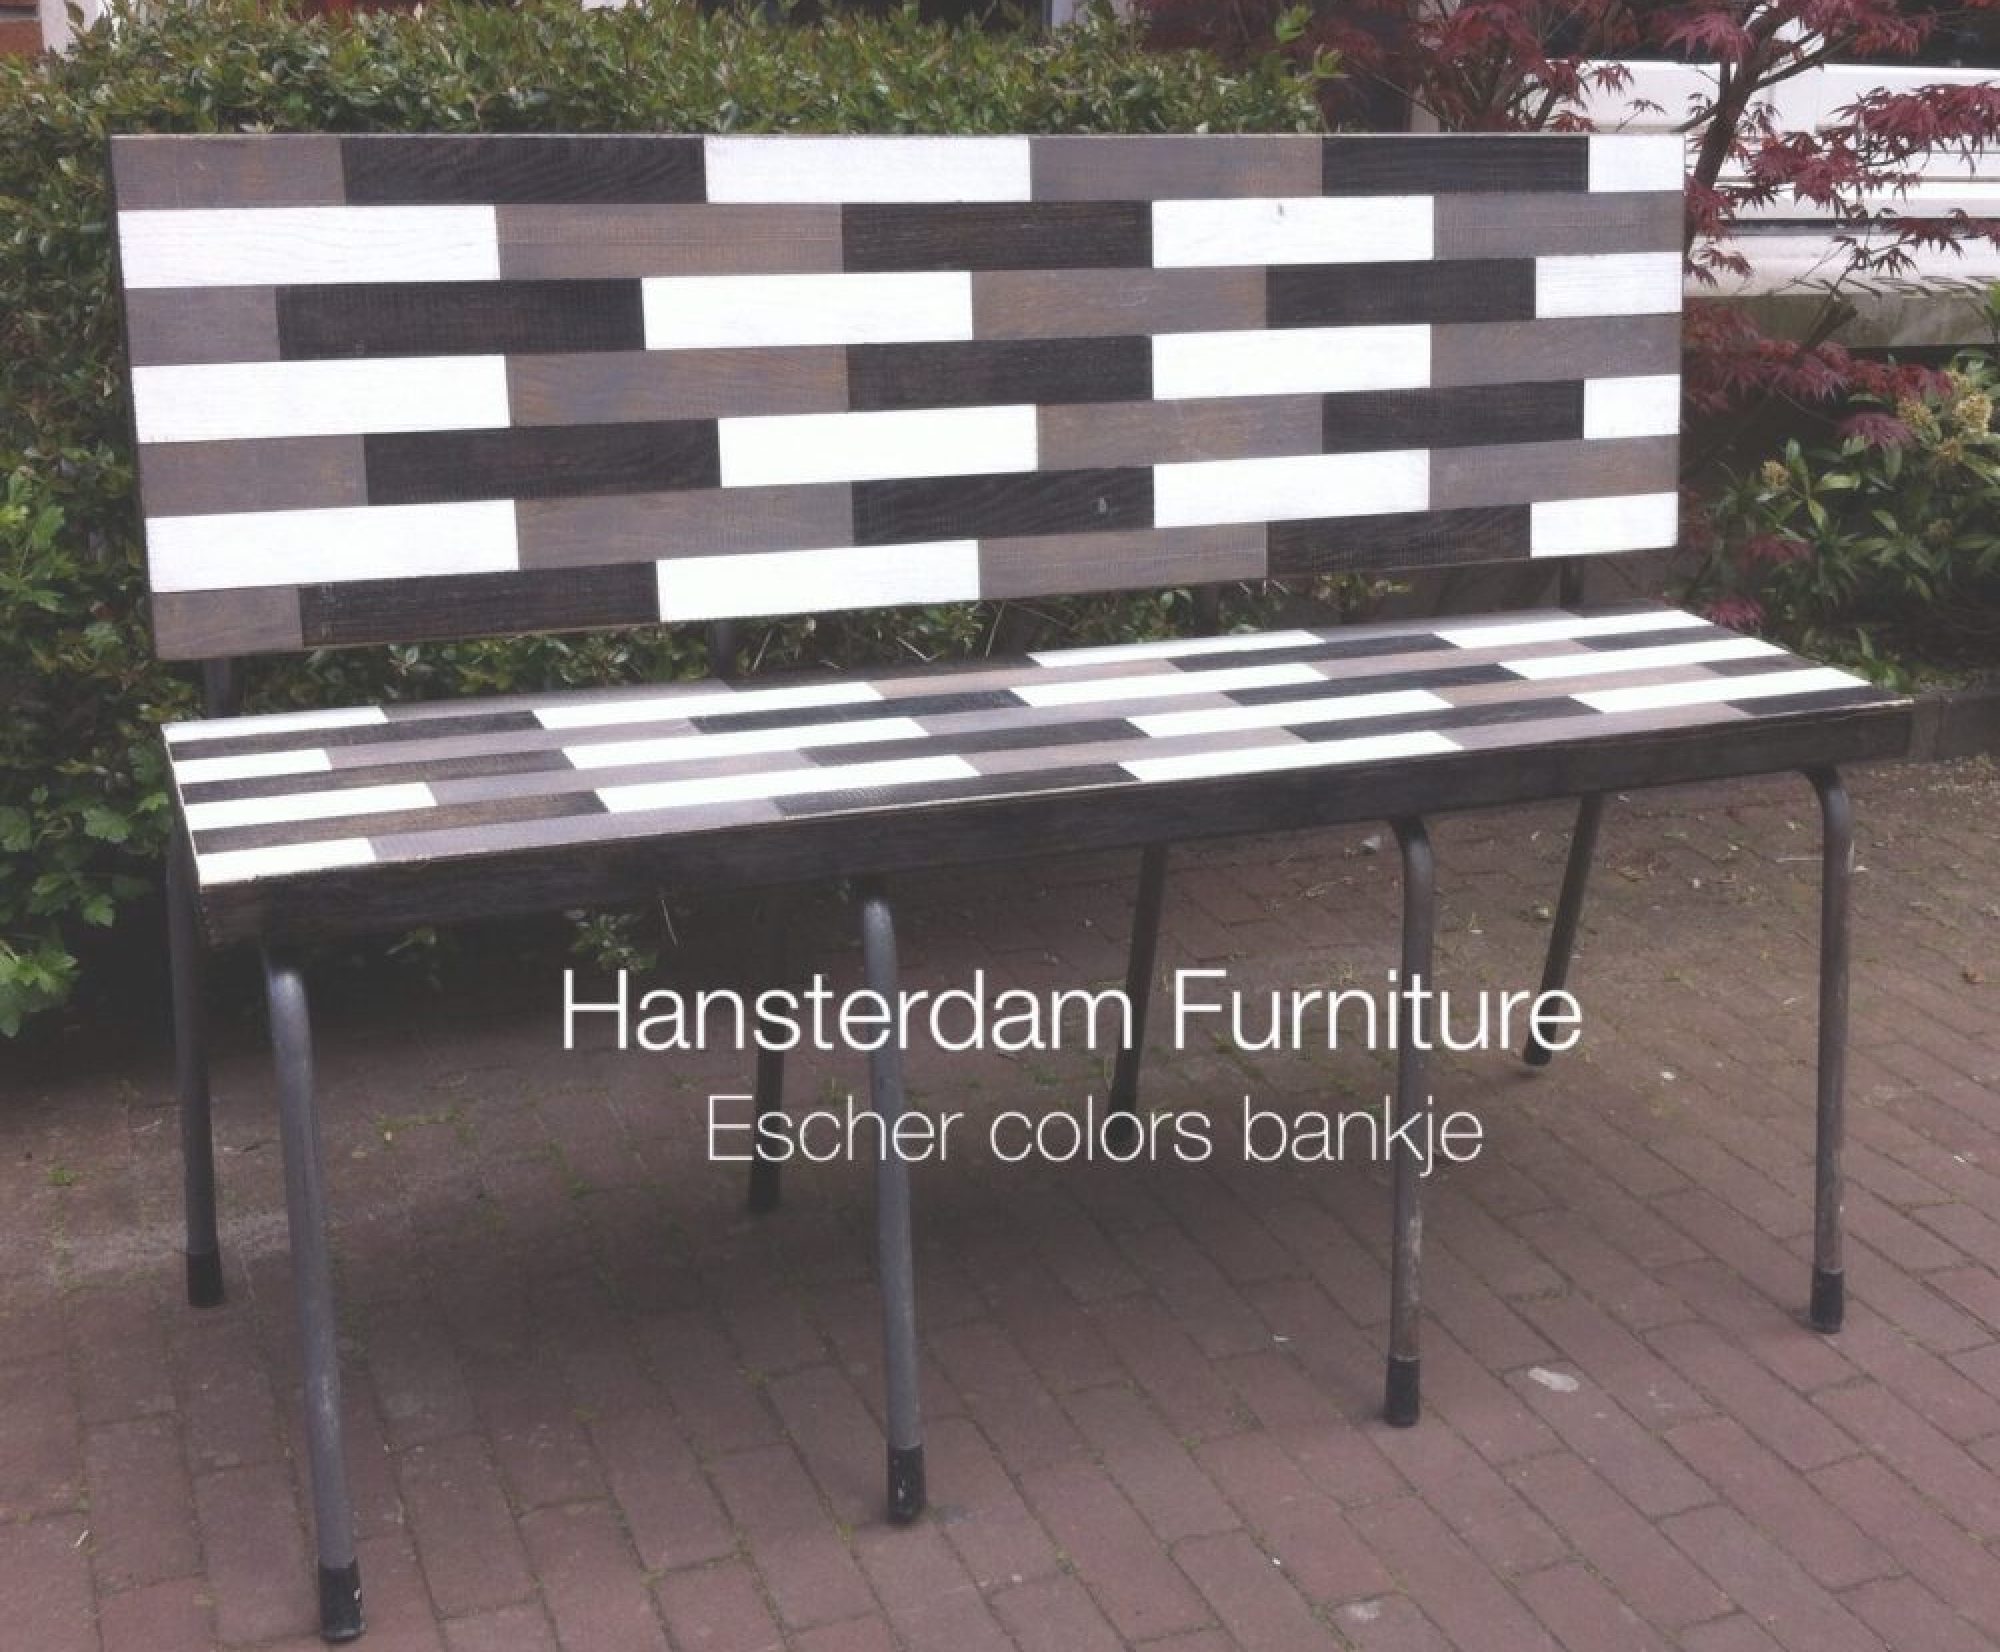 Hansterdam Furniture